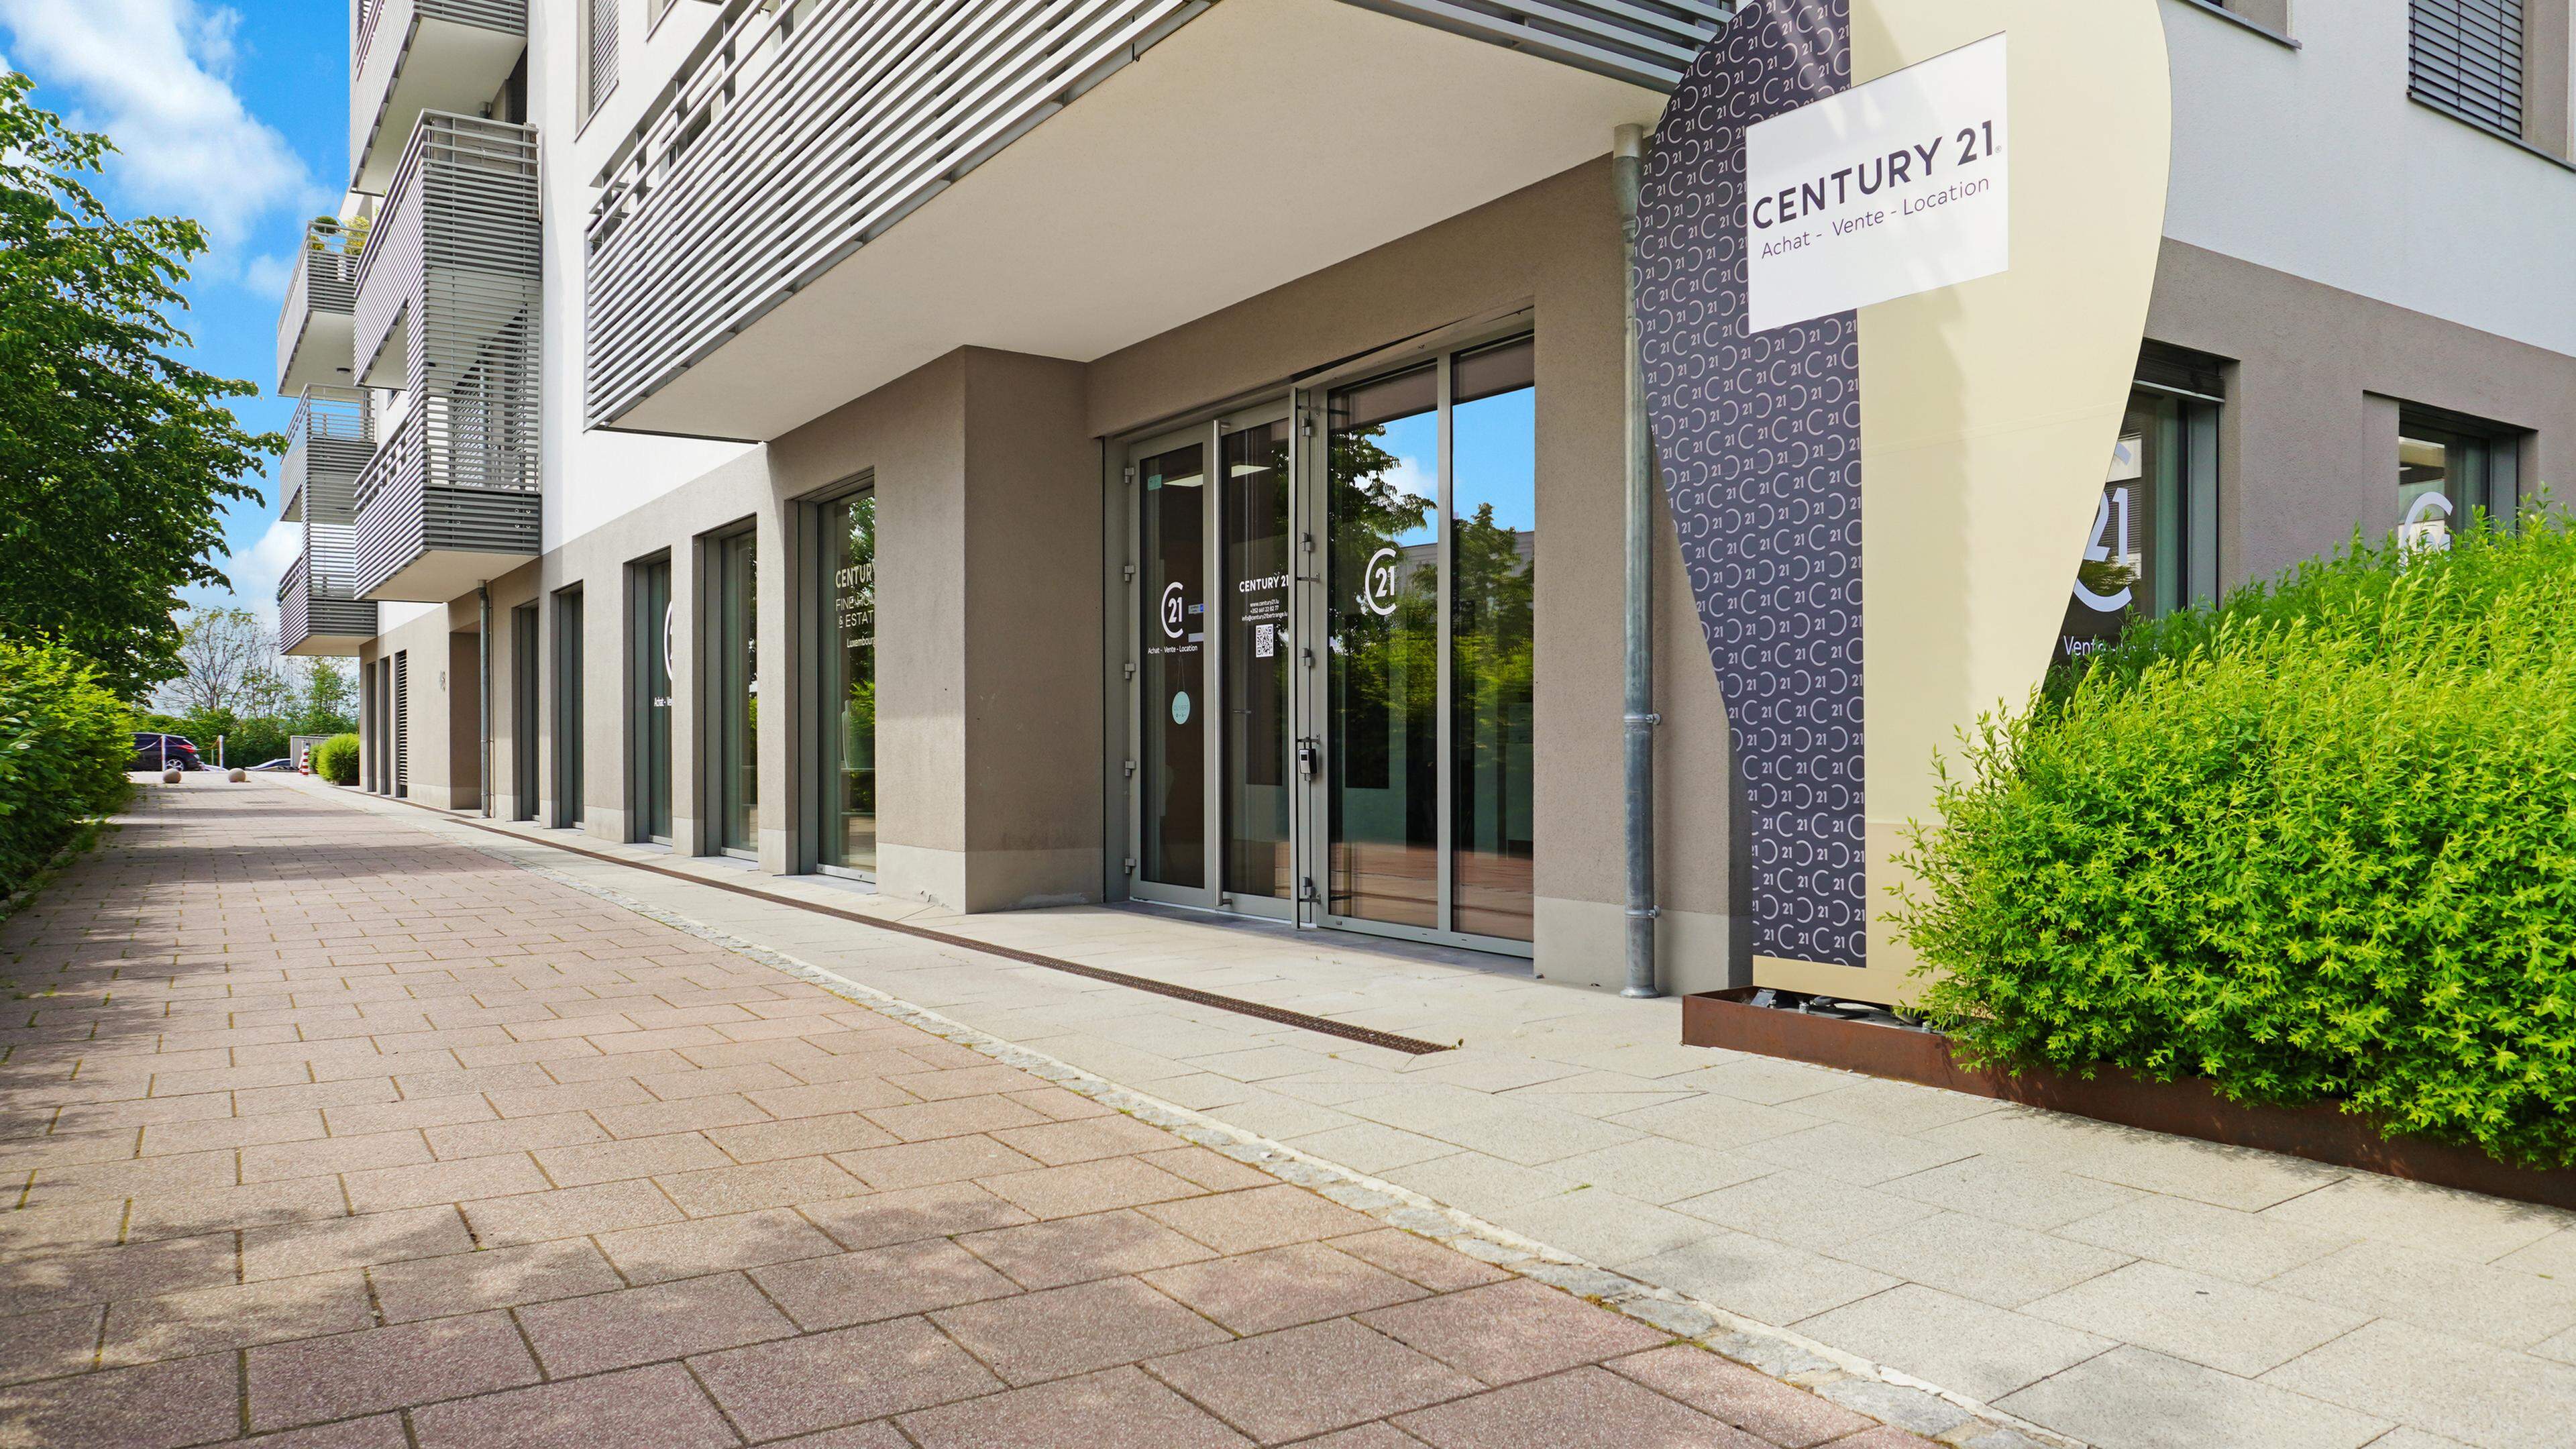 1994 begann Century 21 seine Geschäftstätigkeit in Belgien, die Immobiliengruppe war bislang aber weder in Luxemburg noch in den Niederlanden aktiv. 